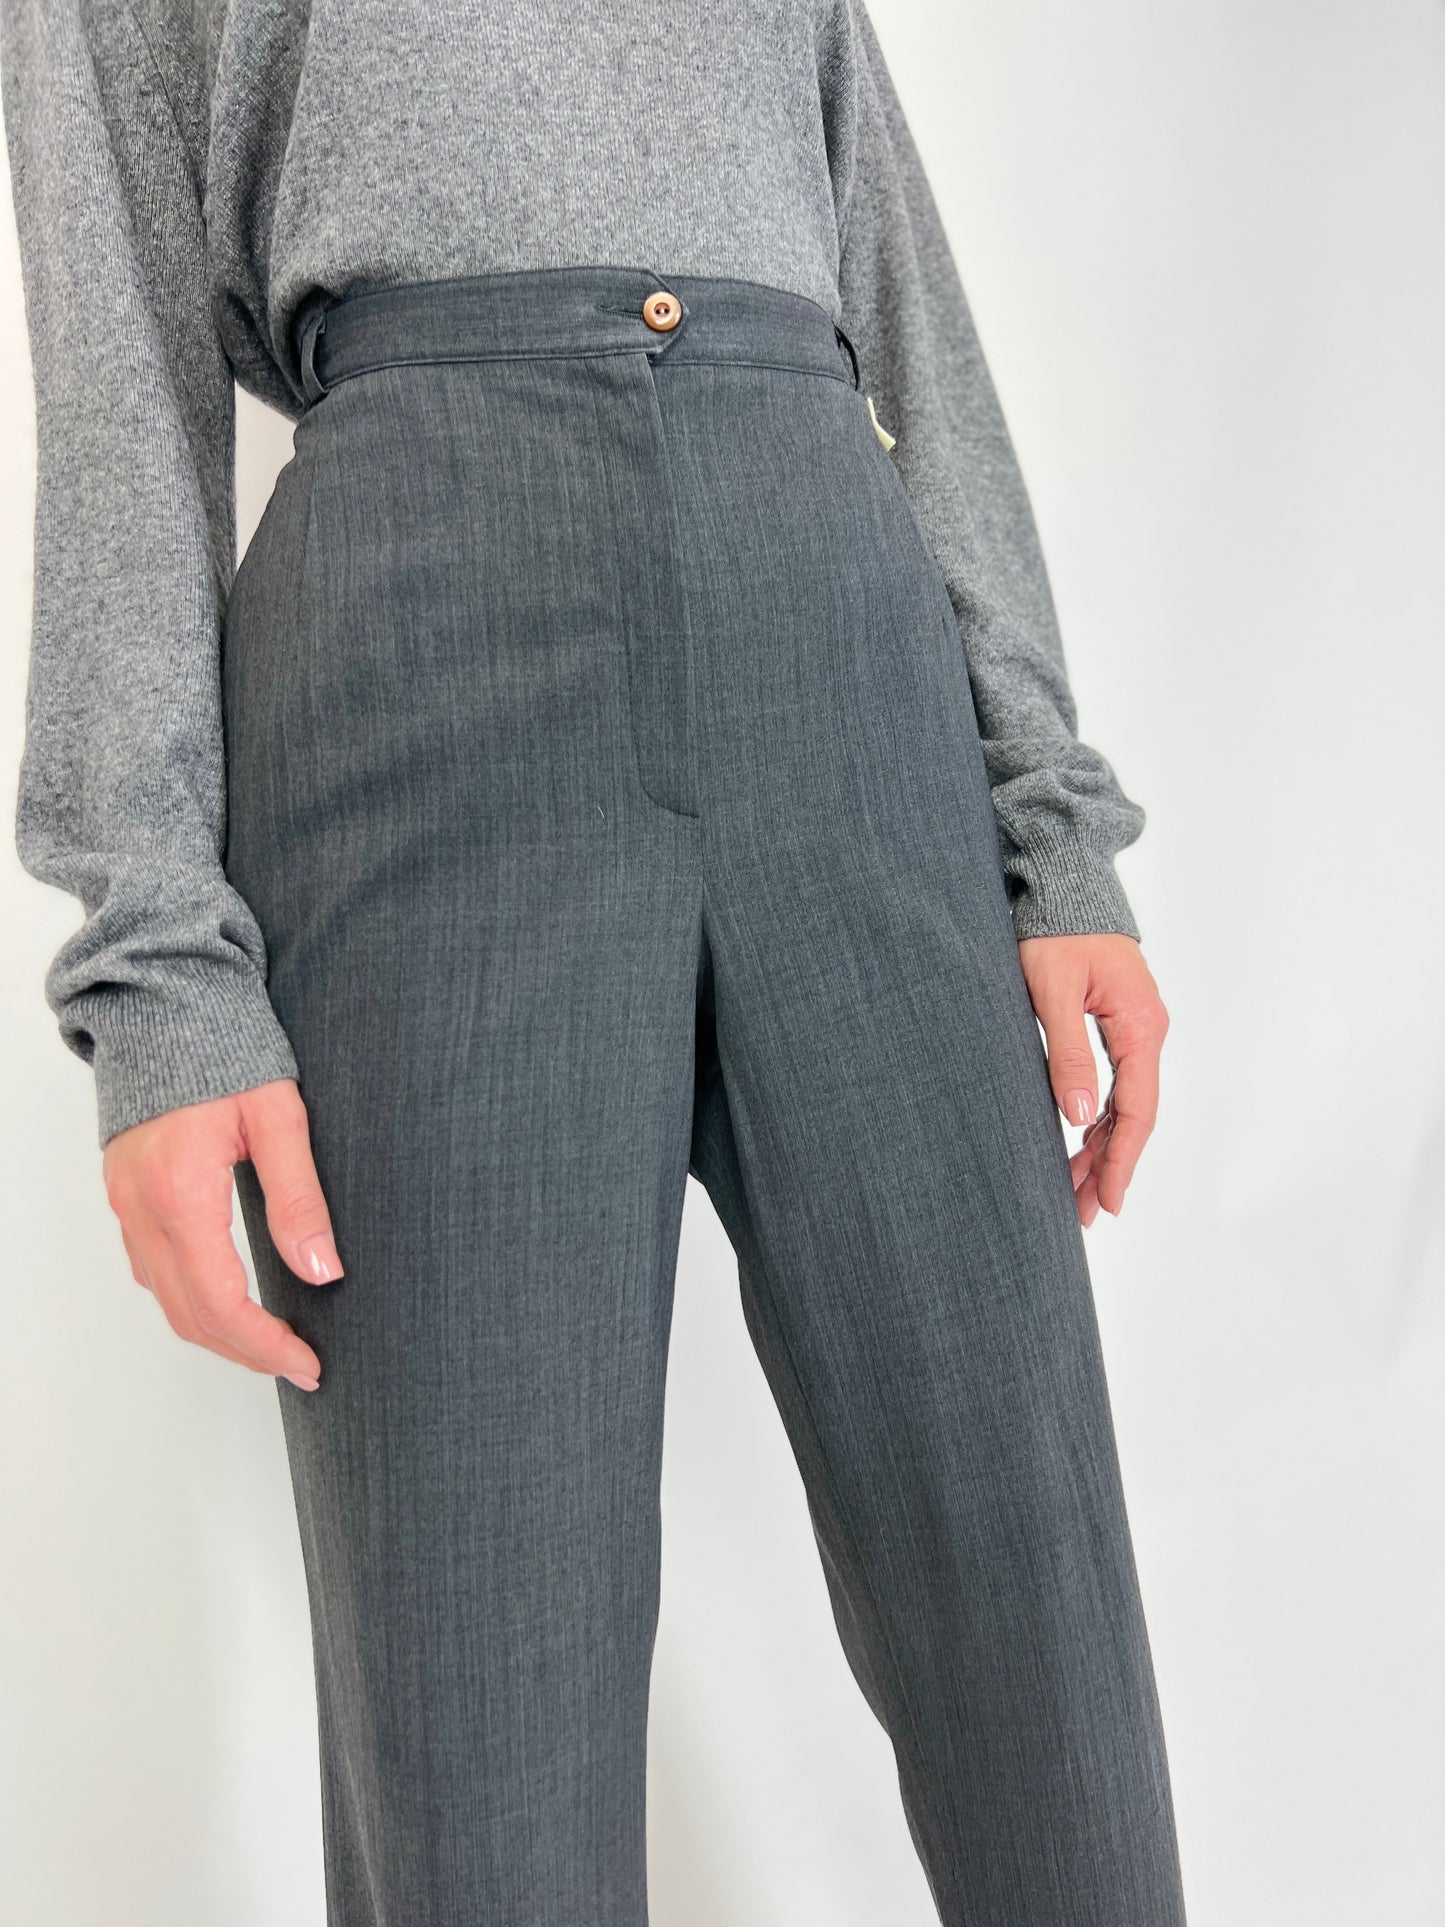 Pantaloni vintage noi lana extrafina strech